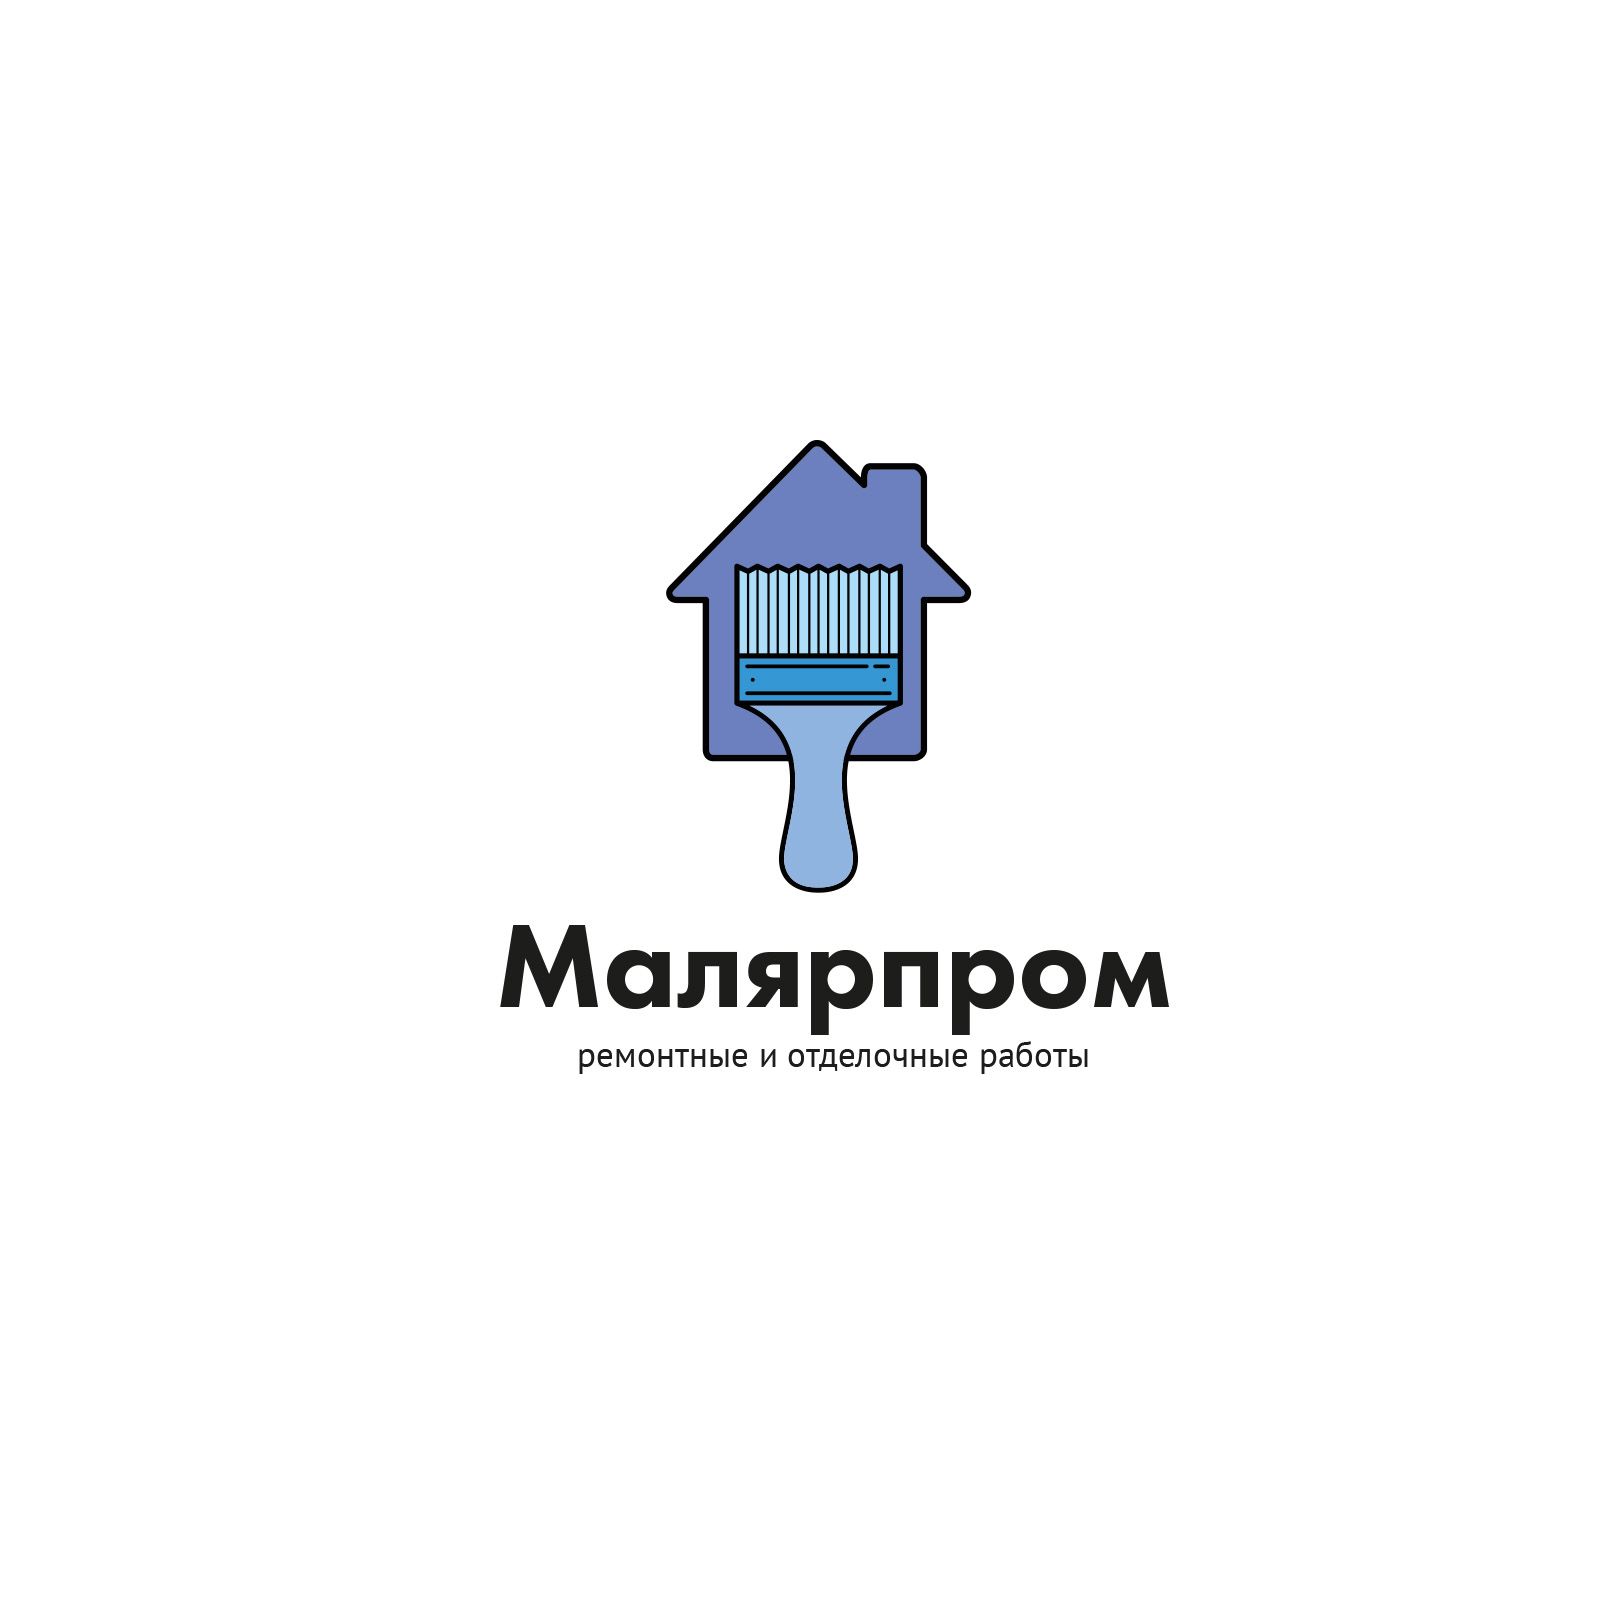 Лого и фирменный стиль для Малярпром - дизайнер Chiksatilo